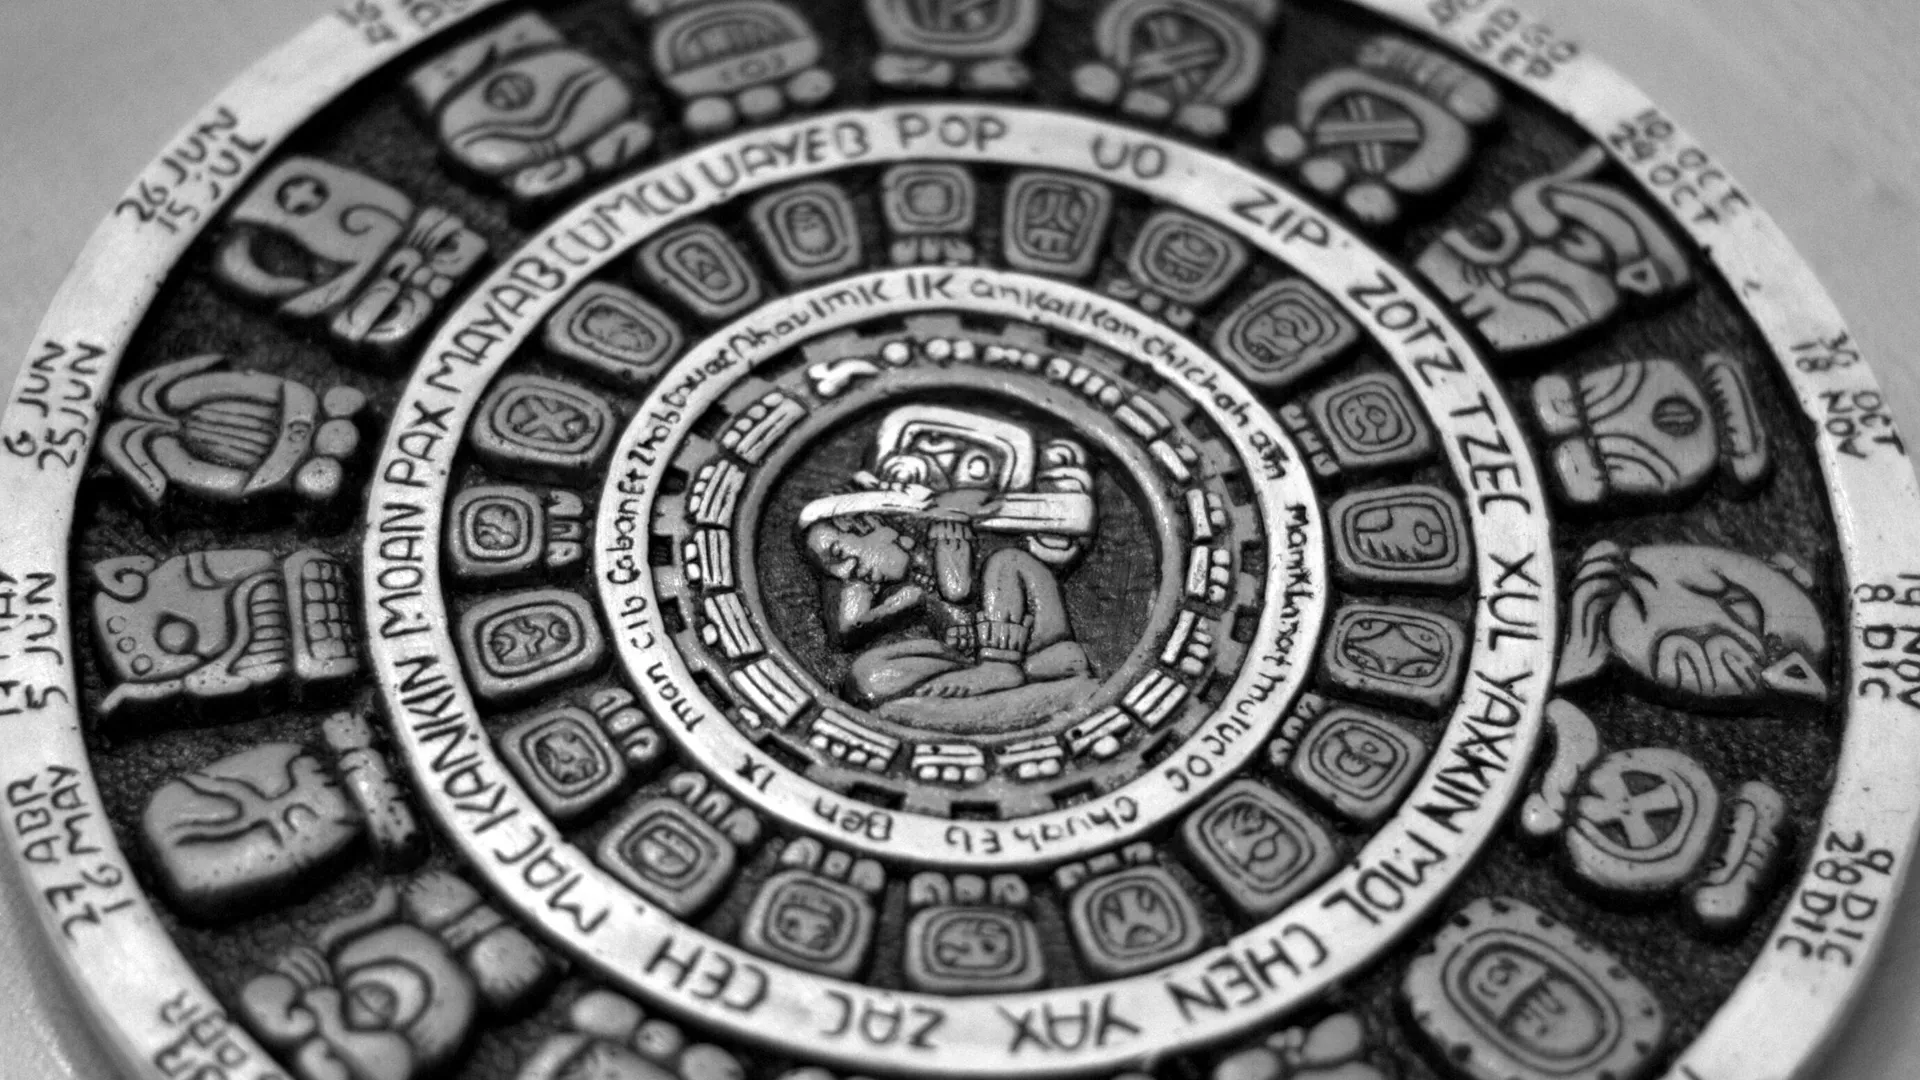  ¿Cómo funciona el calendario maya? Científicos afirman que ahora tienen la respuesta